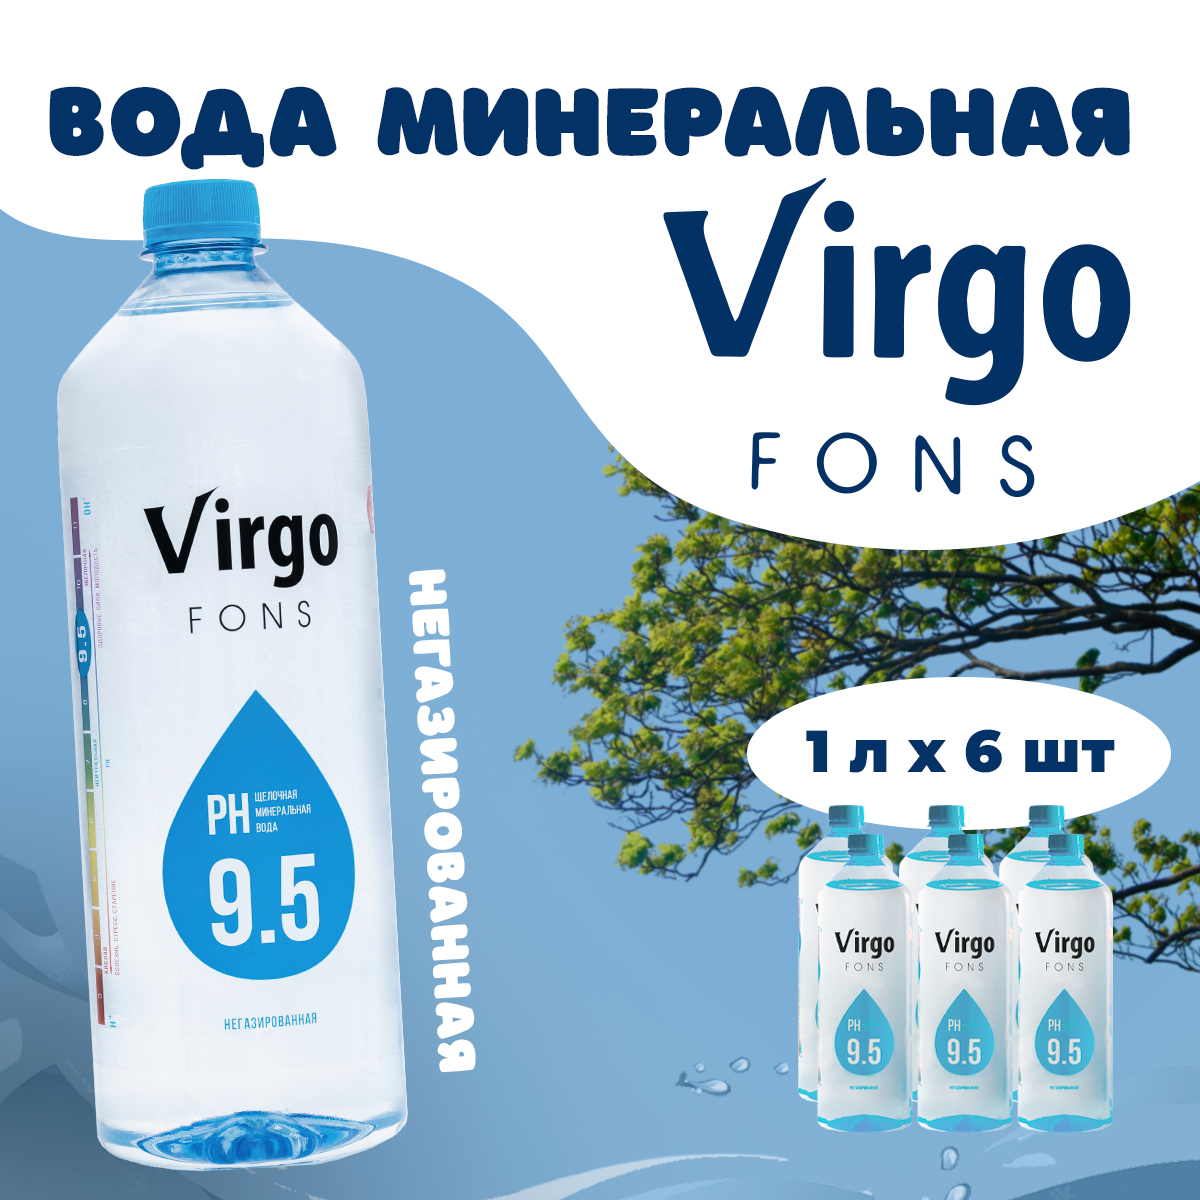 Вода минеральная Virgo fons природная щелочная pH 9,5, негазированная, 1 л х 6 шт